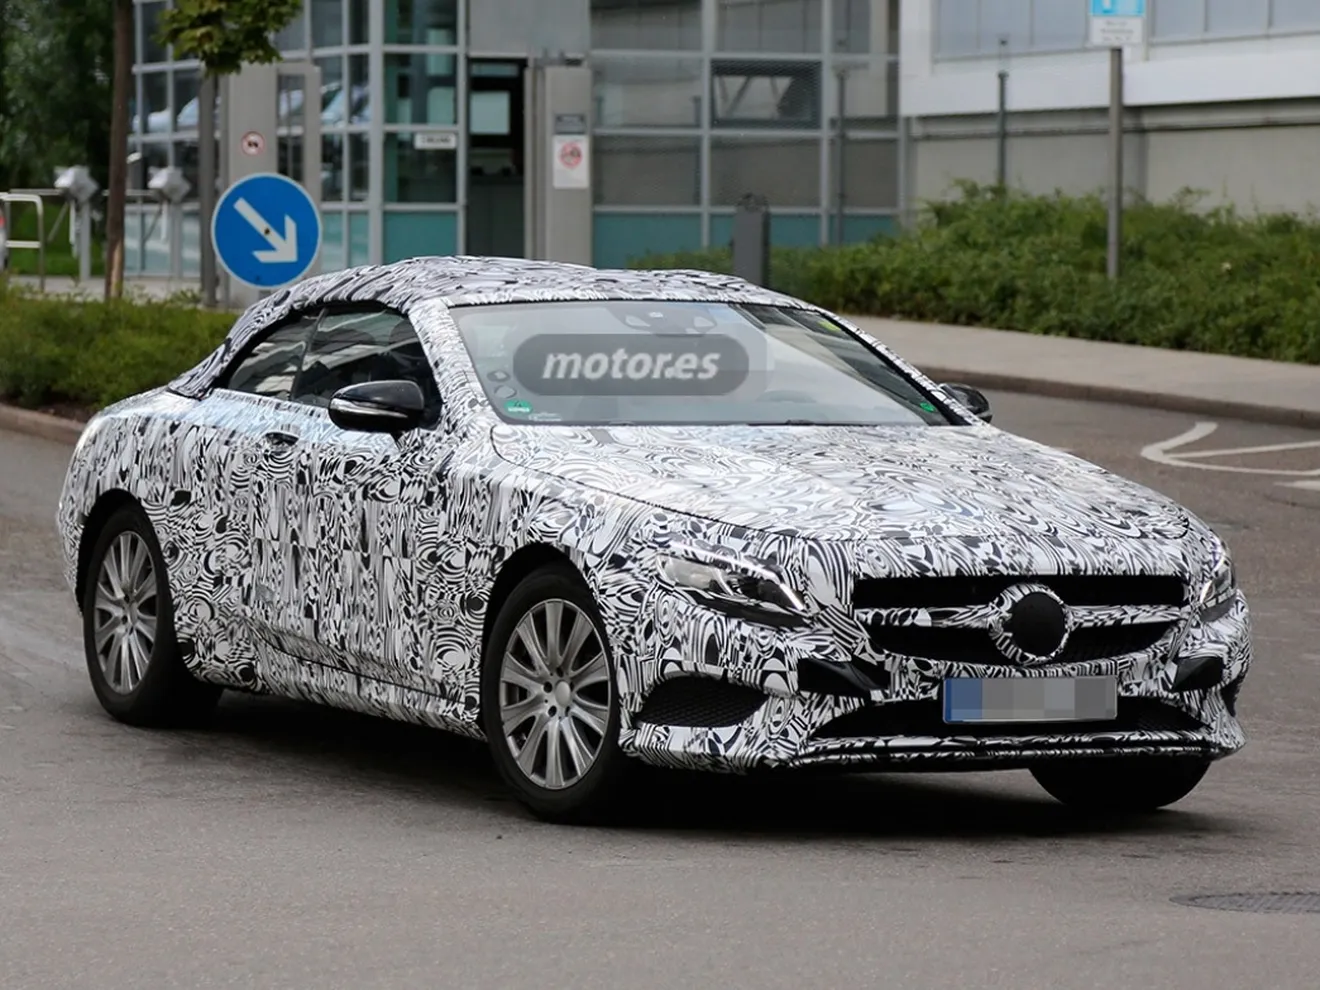 El Mercedes Clase S Cabrio 2015 descubierto en fase de pruebas